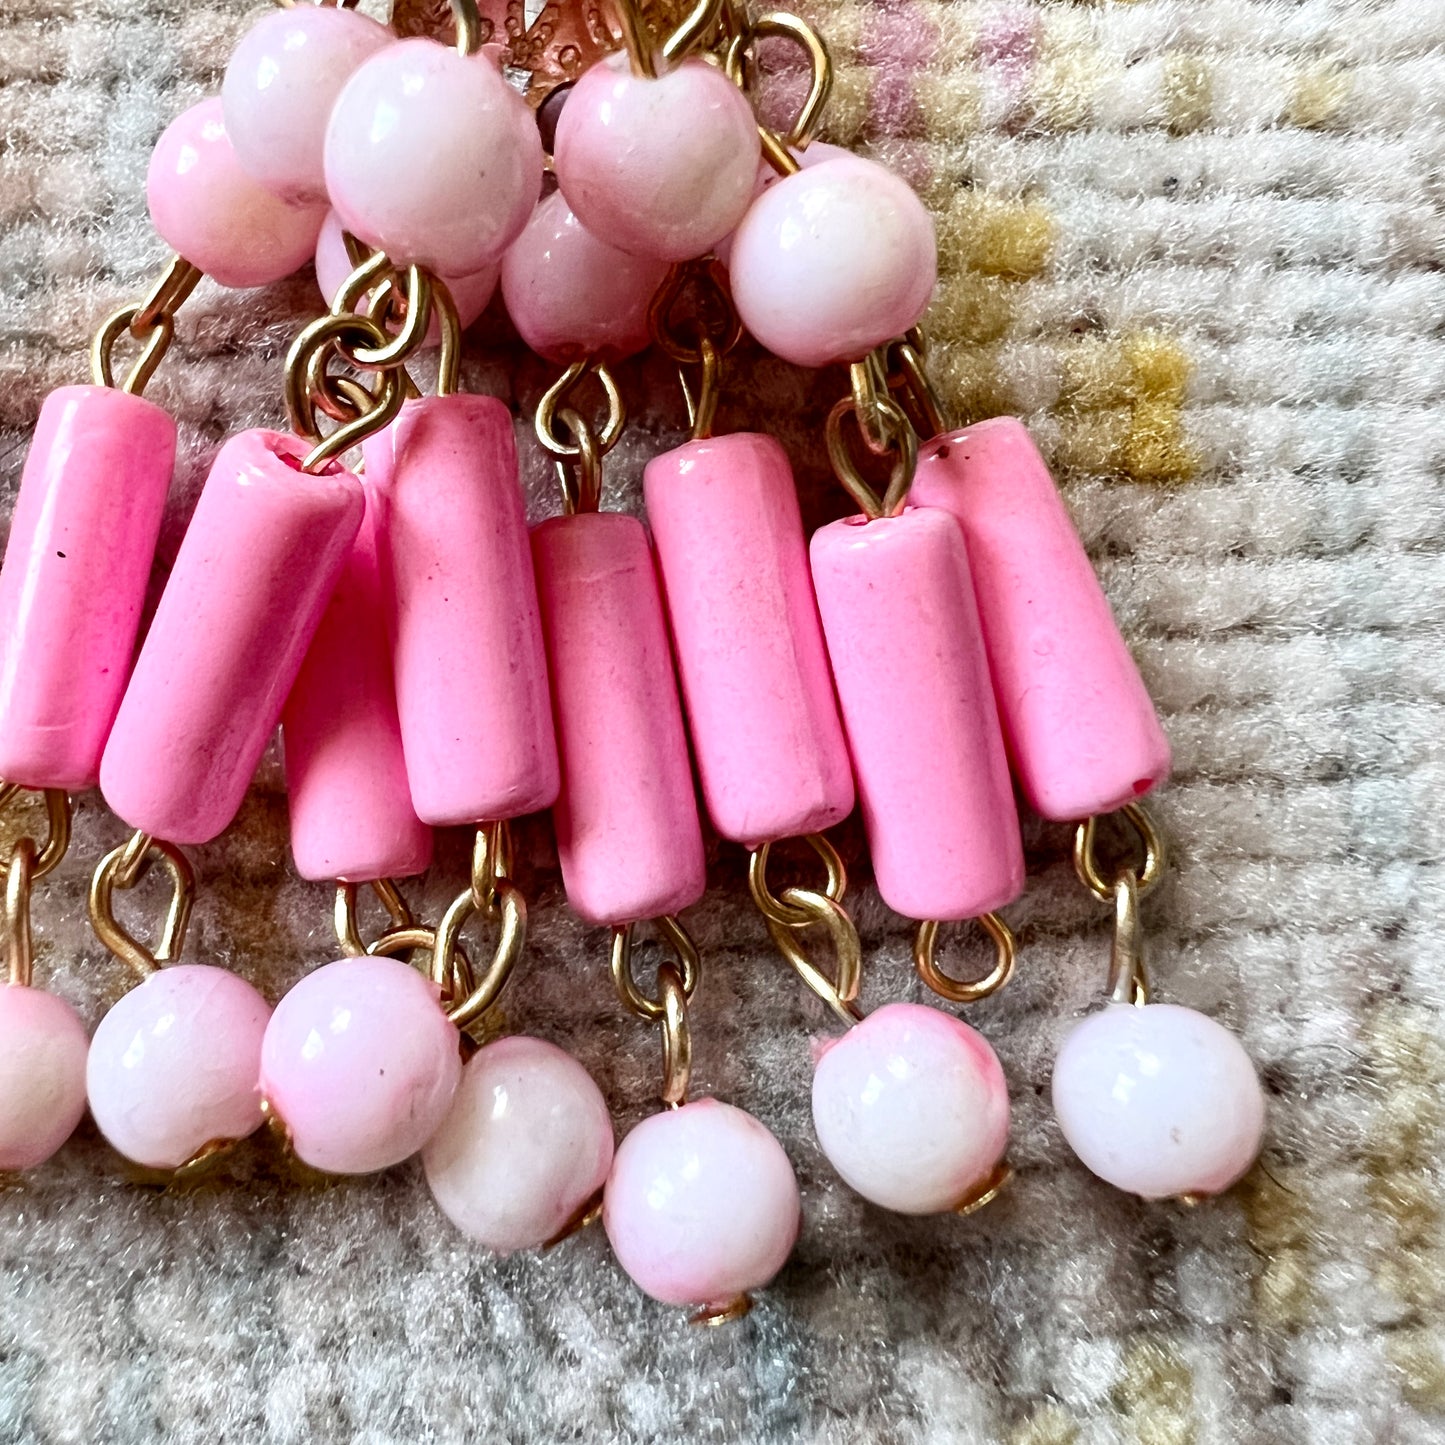 [AS-IS] 1960s Pink Chandelier Clip-On Earrings